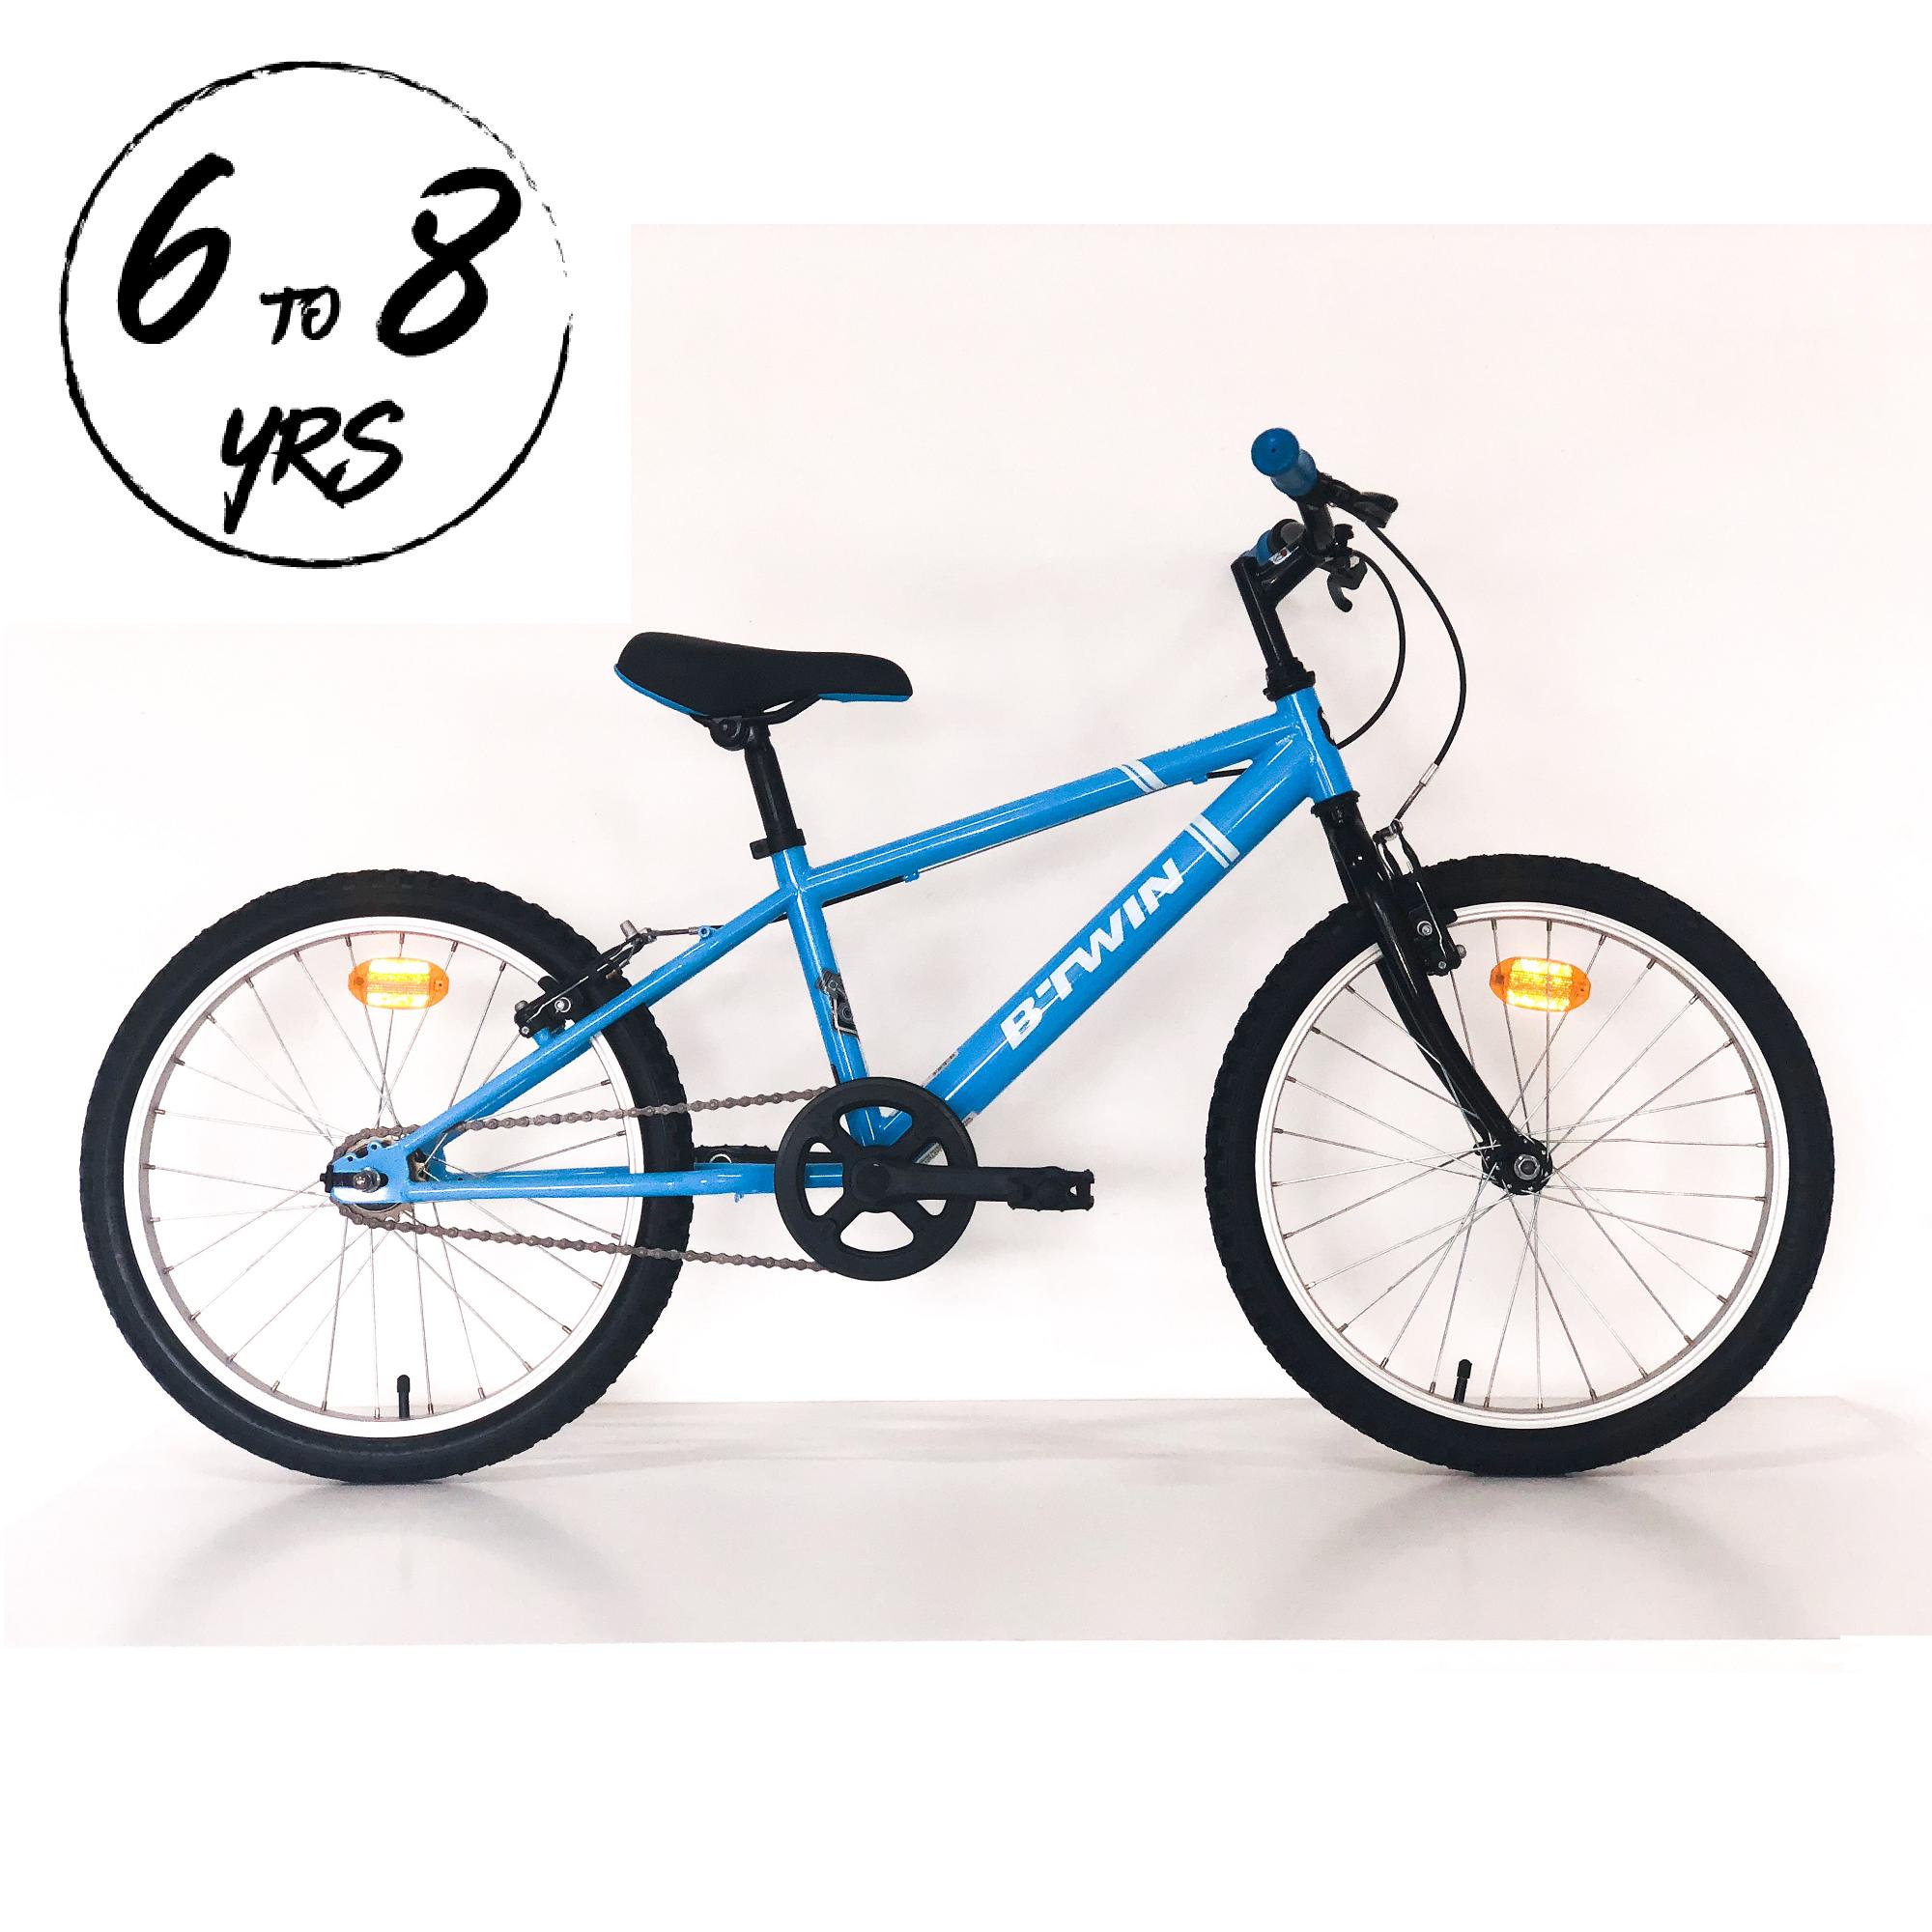 9 year boy cycle